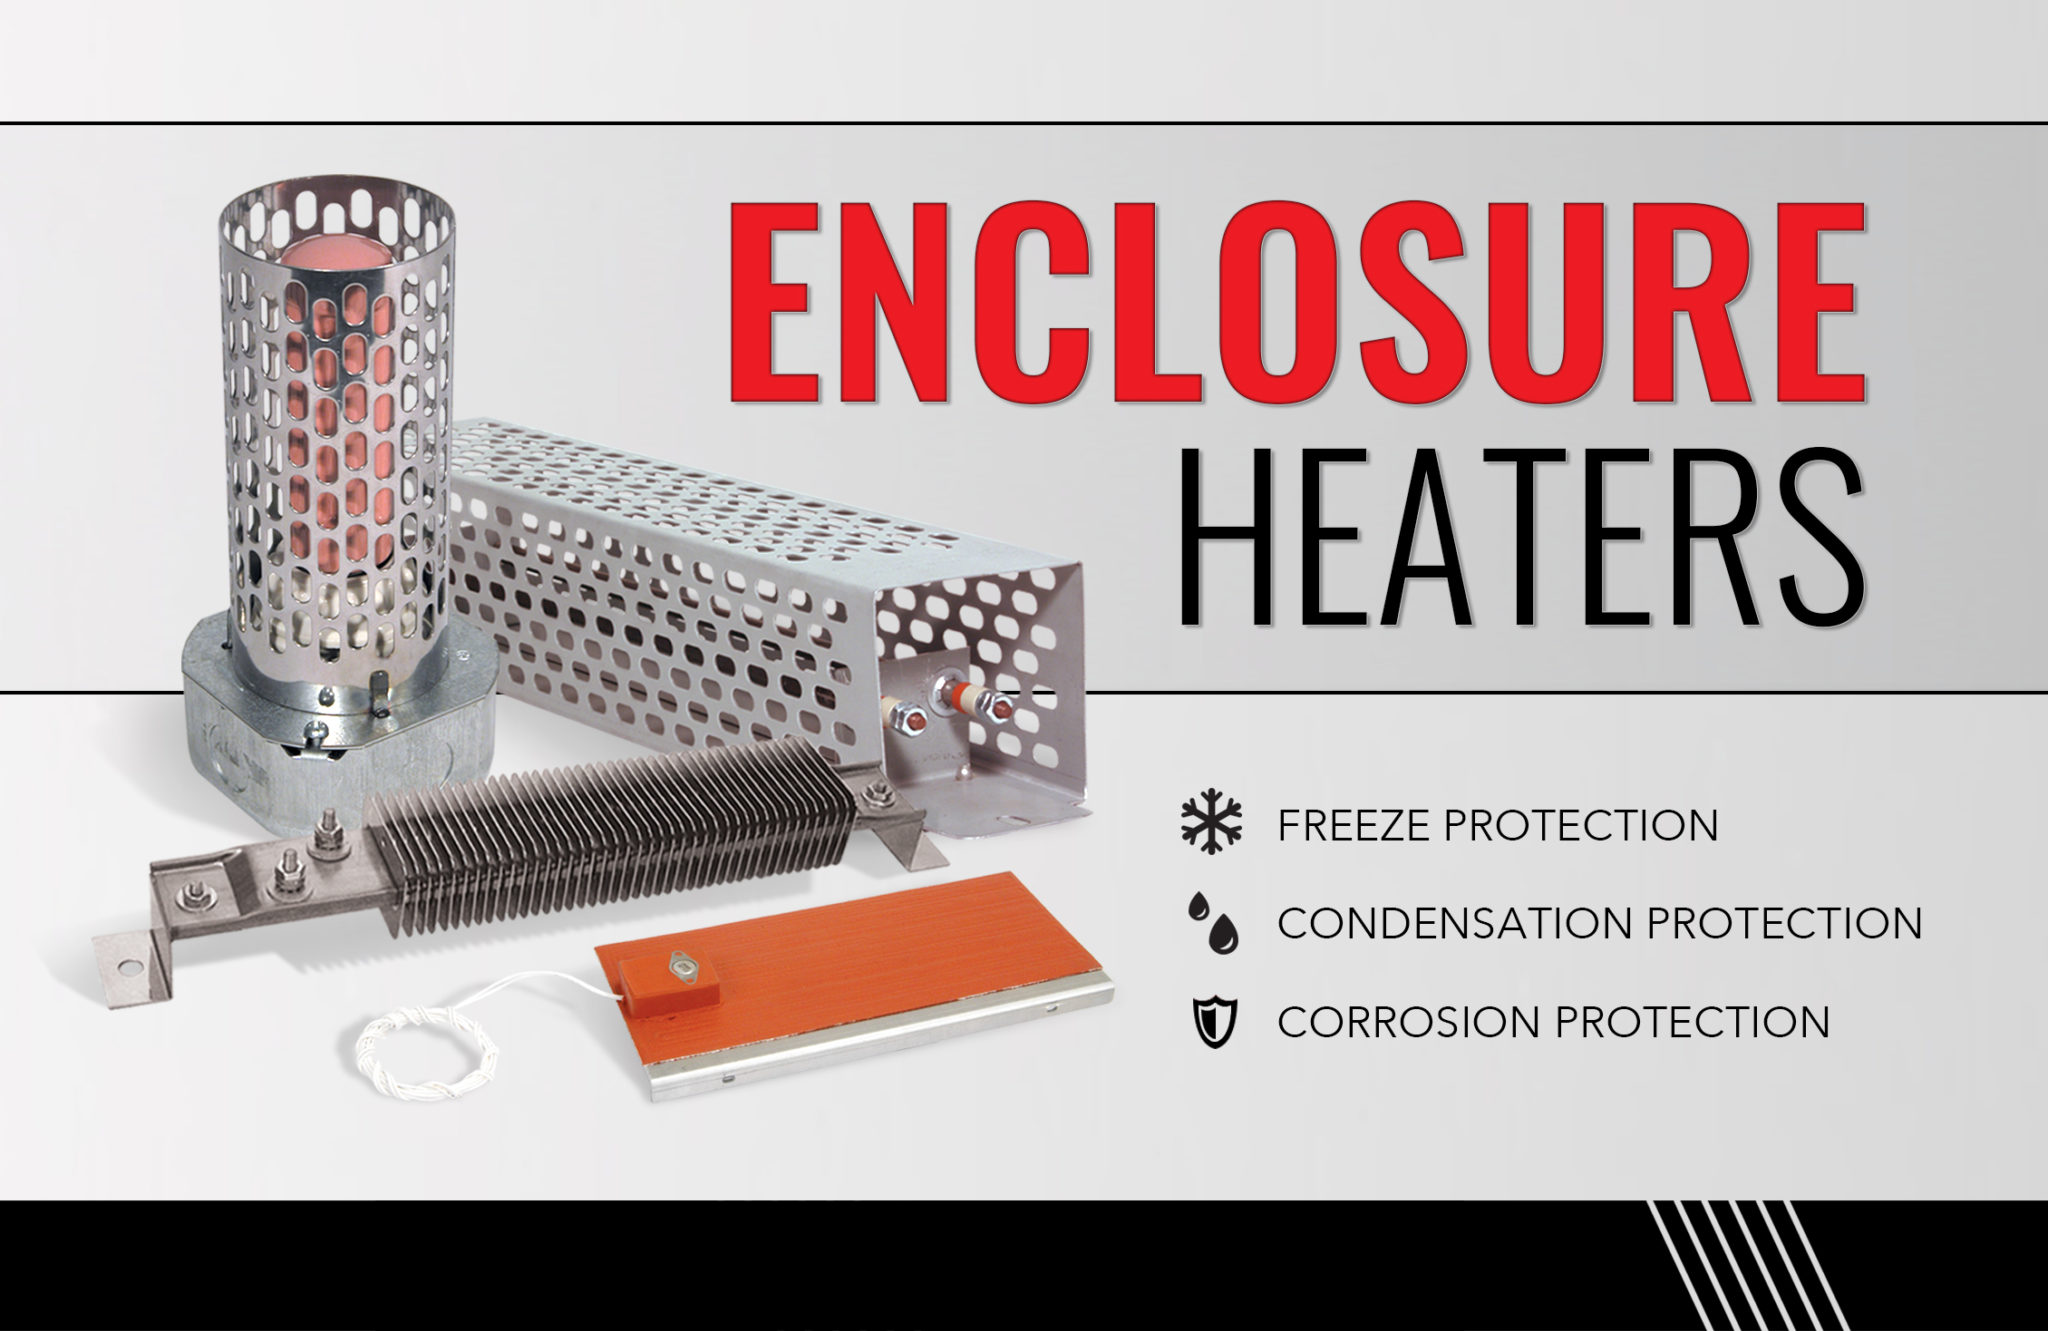 Tempco Enclosure Heaters | Eagle Sensors and Controls